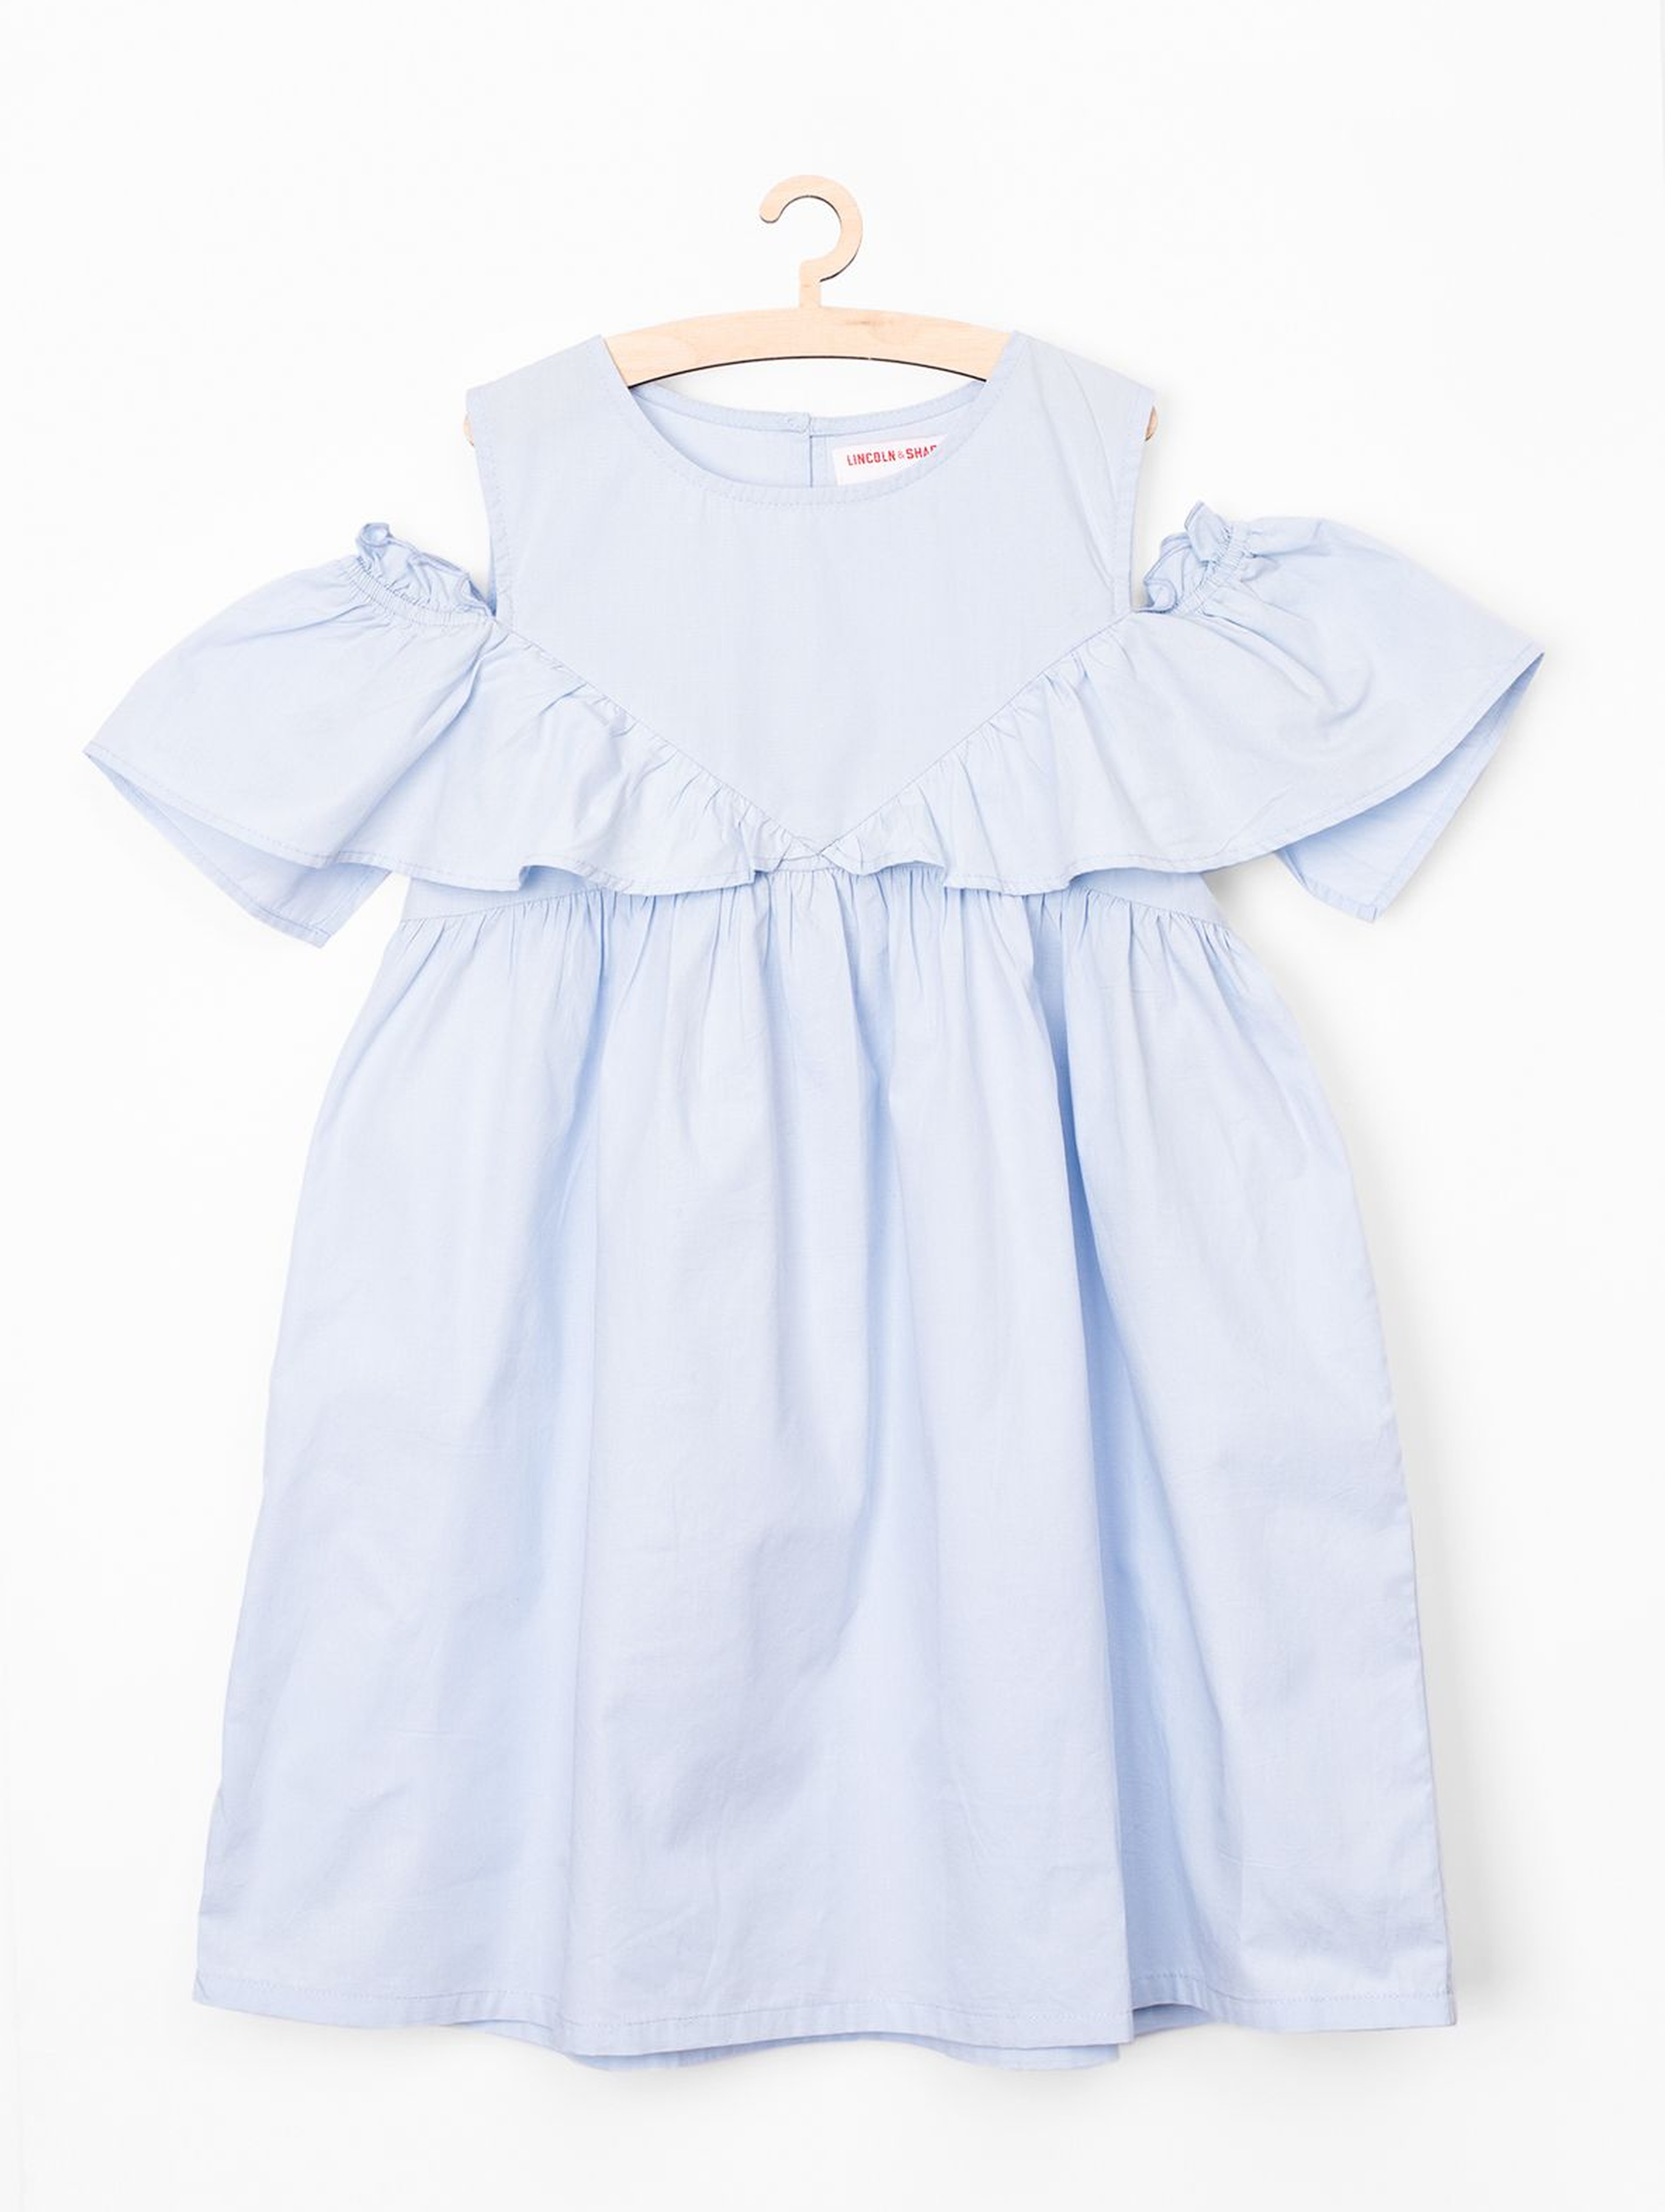 Sukienka dziewczęca na lato- niebieska- 100% bawełna